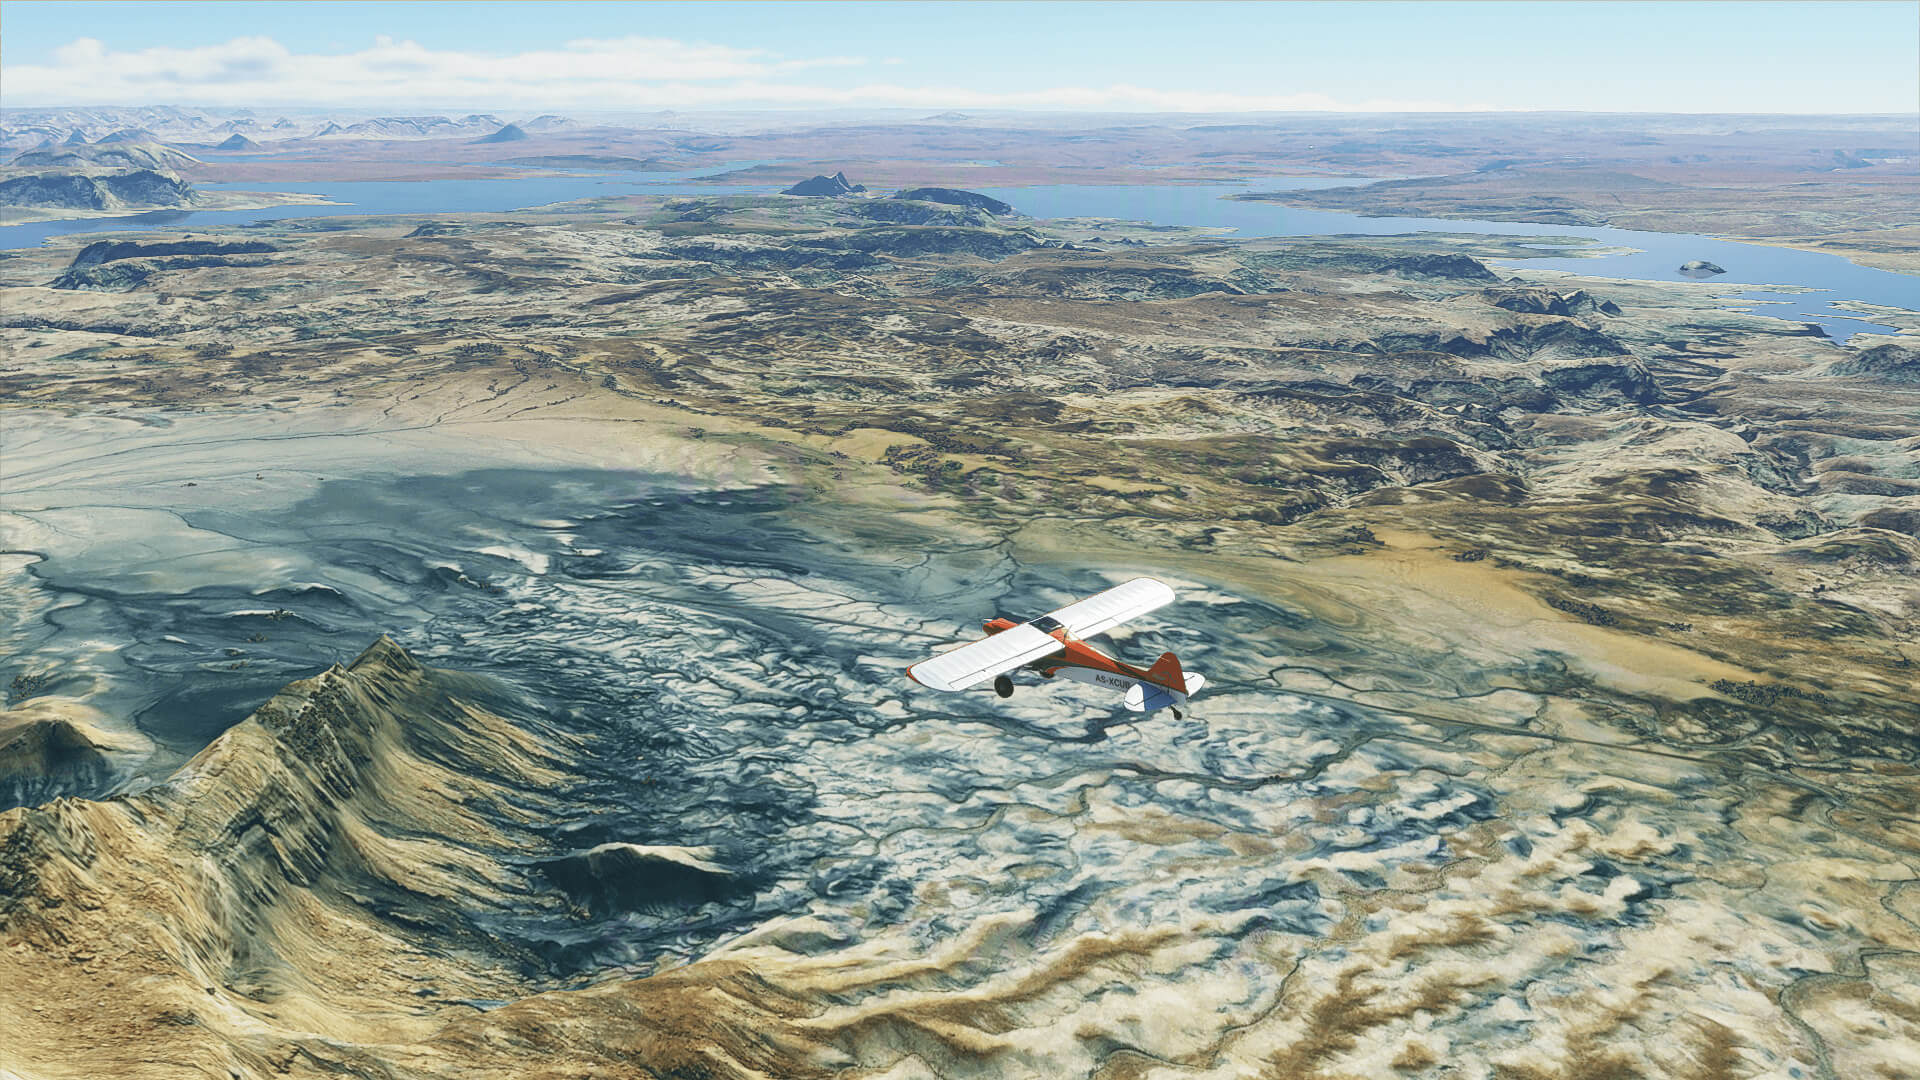 《微软飞行模拟》新截图公布 展示环境、城市和飞行器